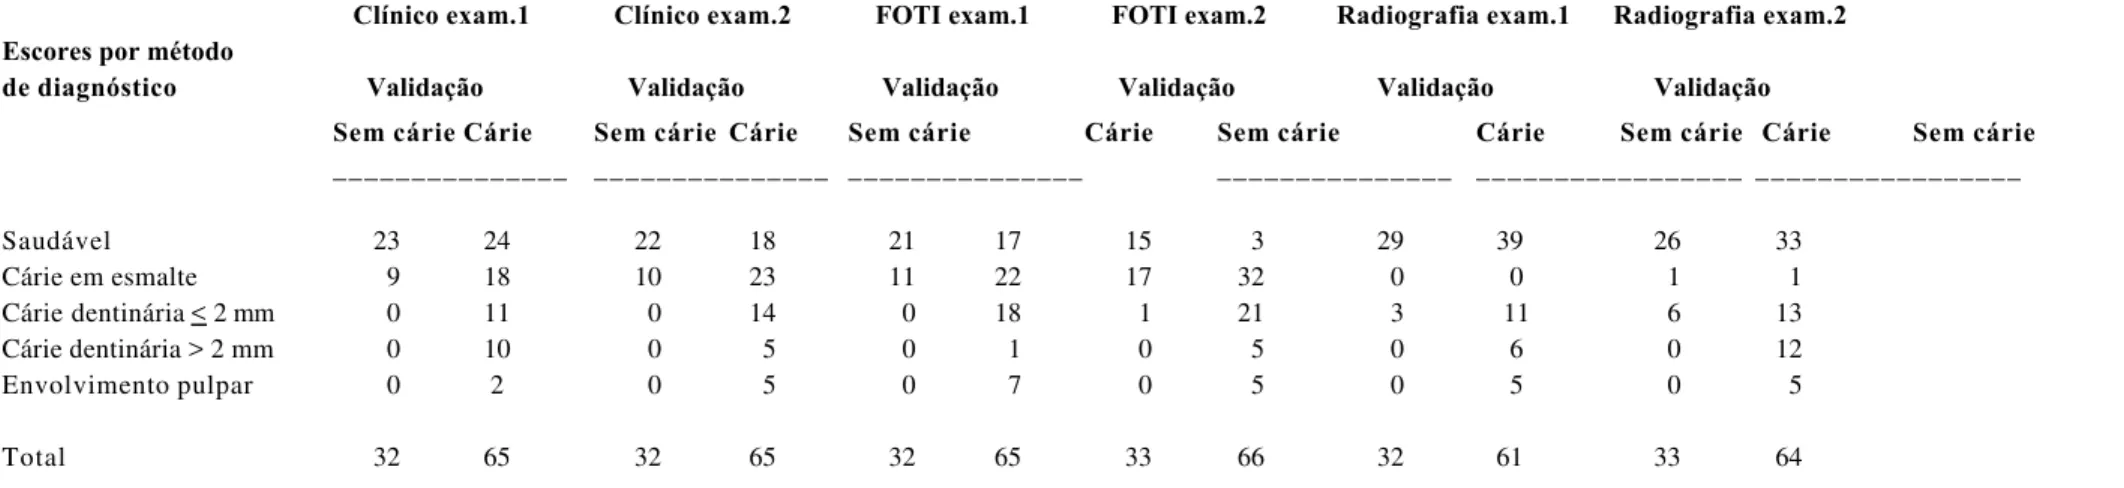 TABELA 5.3 - Diagnóstico de cárie oclusal por exame clínico Visual, FOTI e exame Radiográfico, por examinador (exam